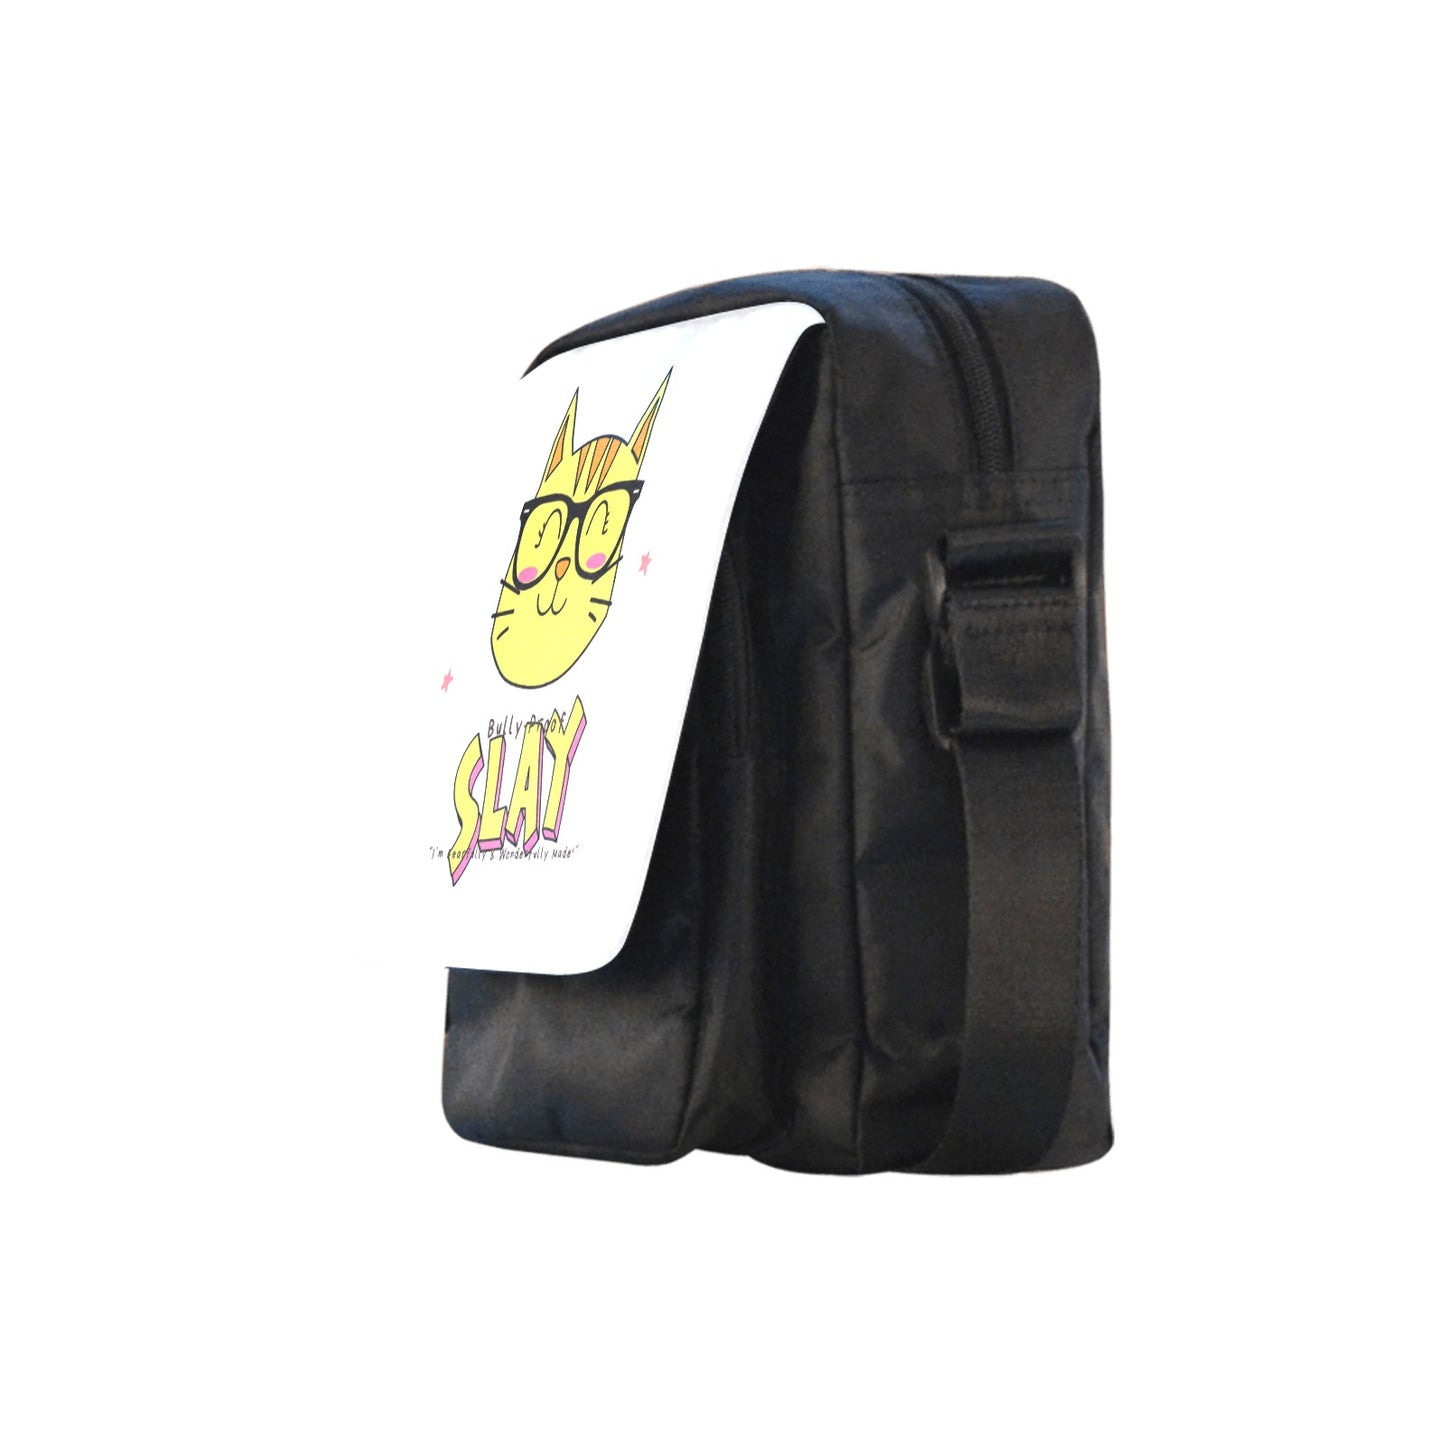 Bully-Proof Da Nerd Kat Slay Custom Cross-body Nylon Bags